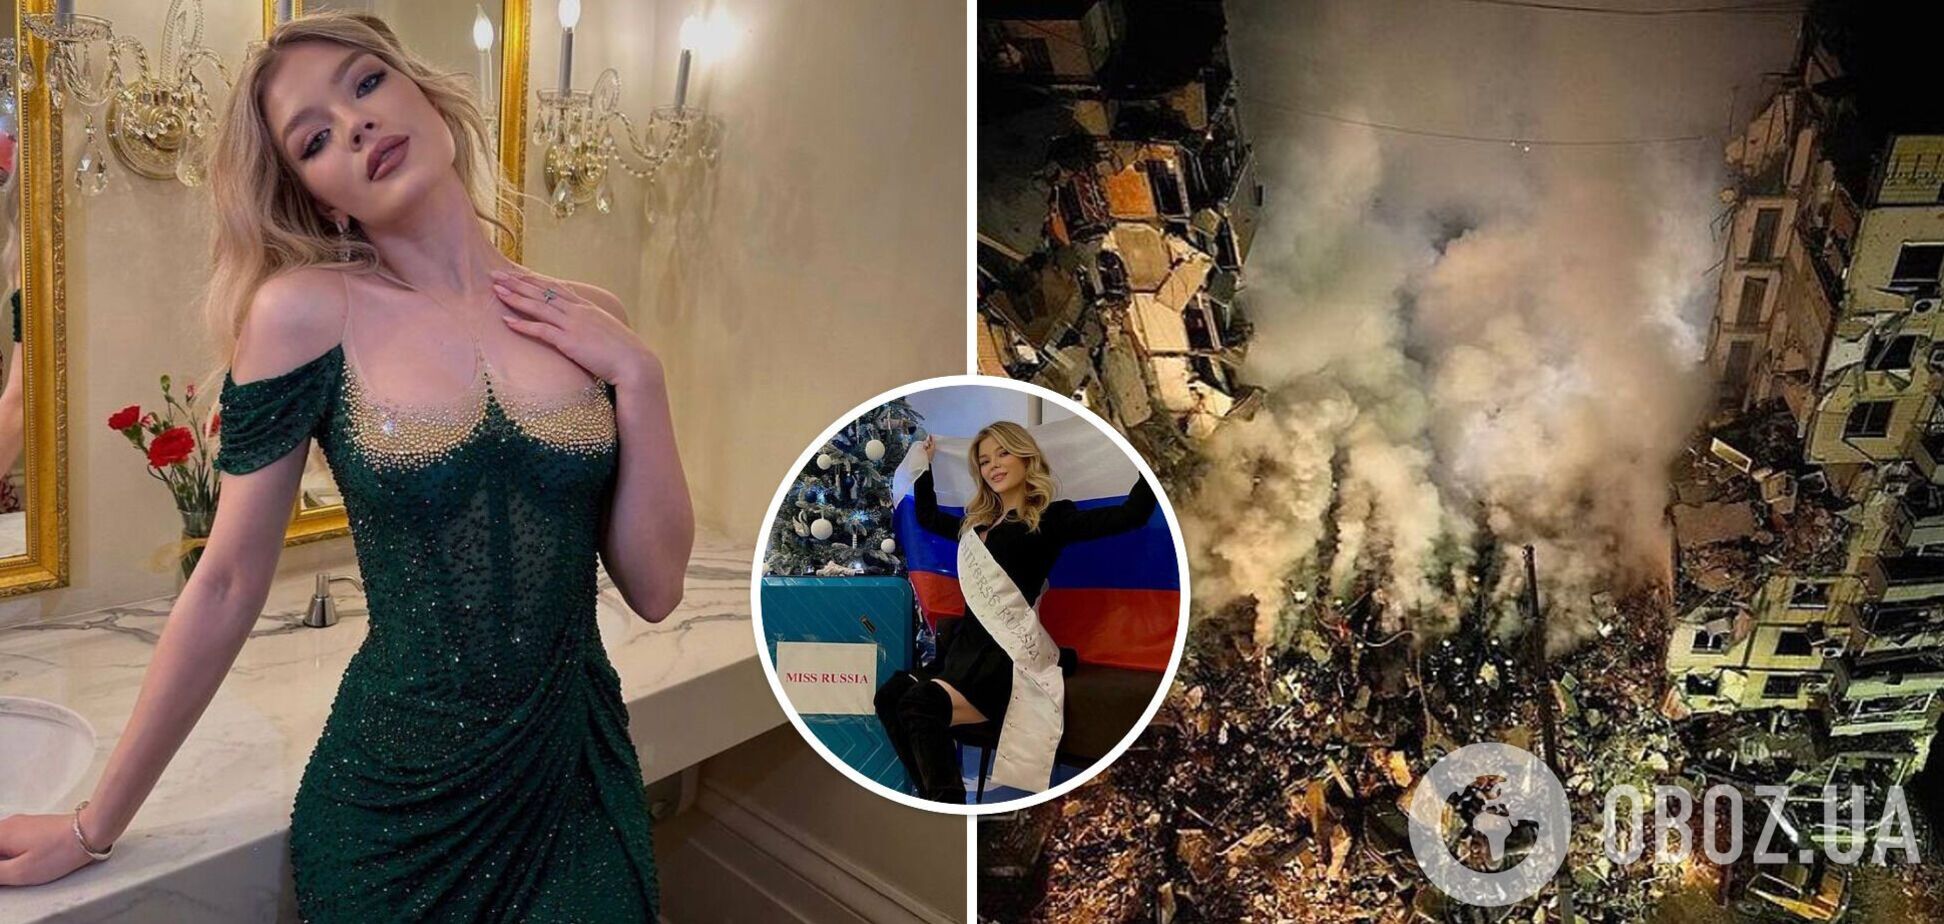 'Должно быть стыдно буллить 22-летнюю': россиянка Линникова пожаловалась на хейт в сети за участие в 'Мисс Вселенная'